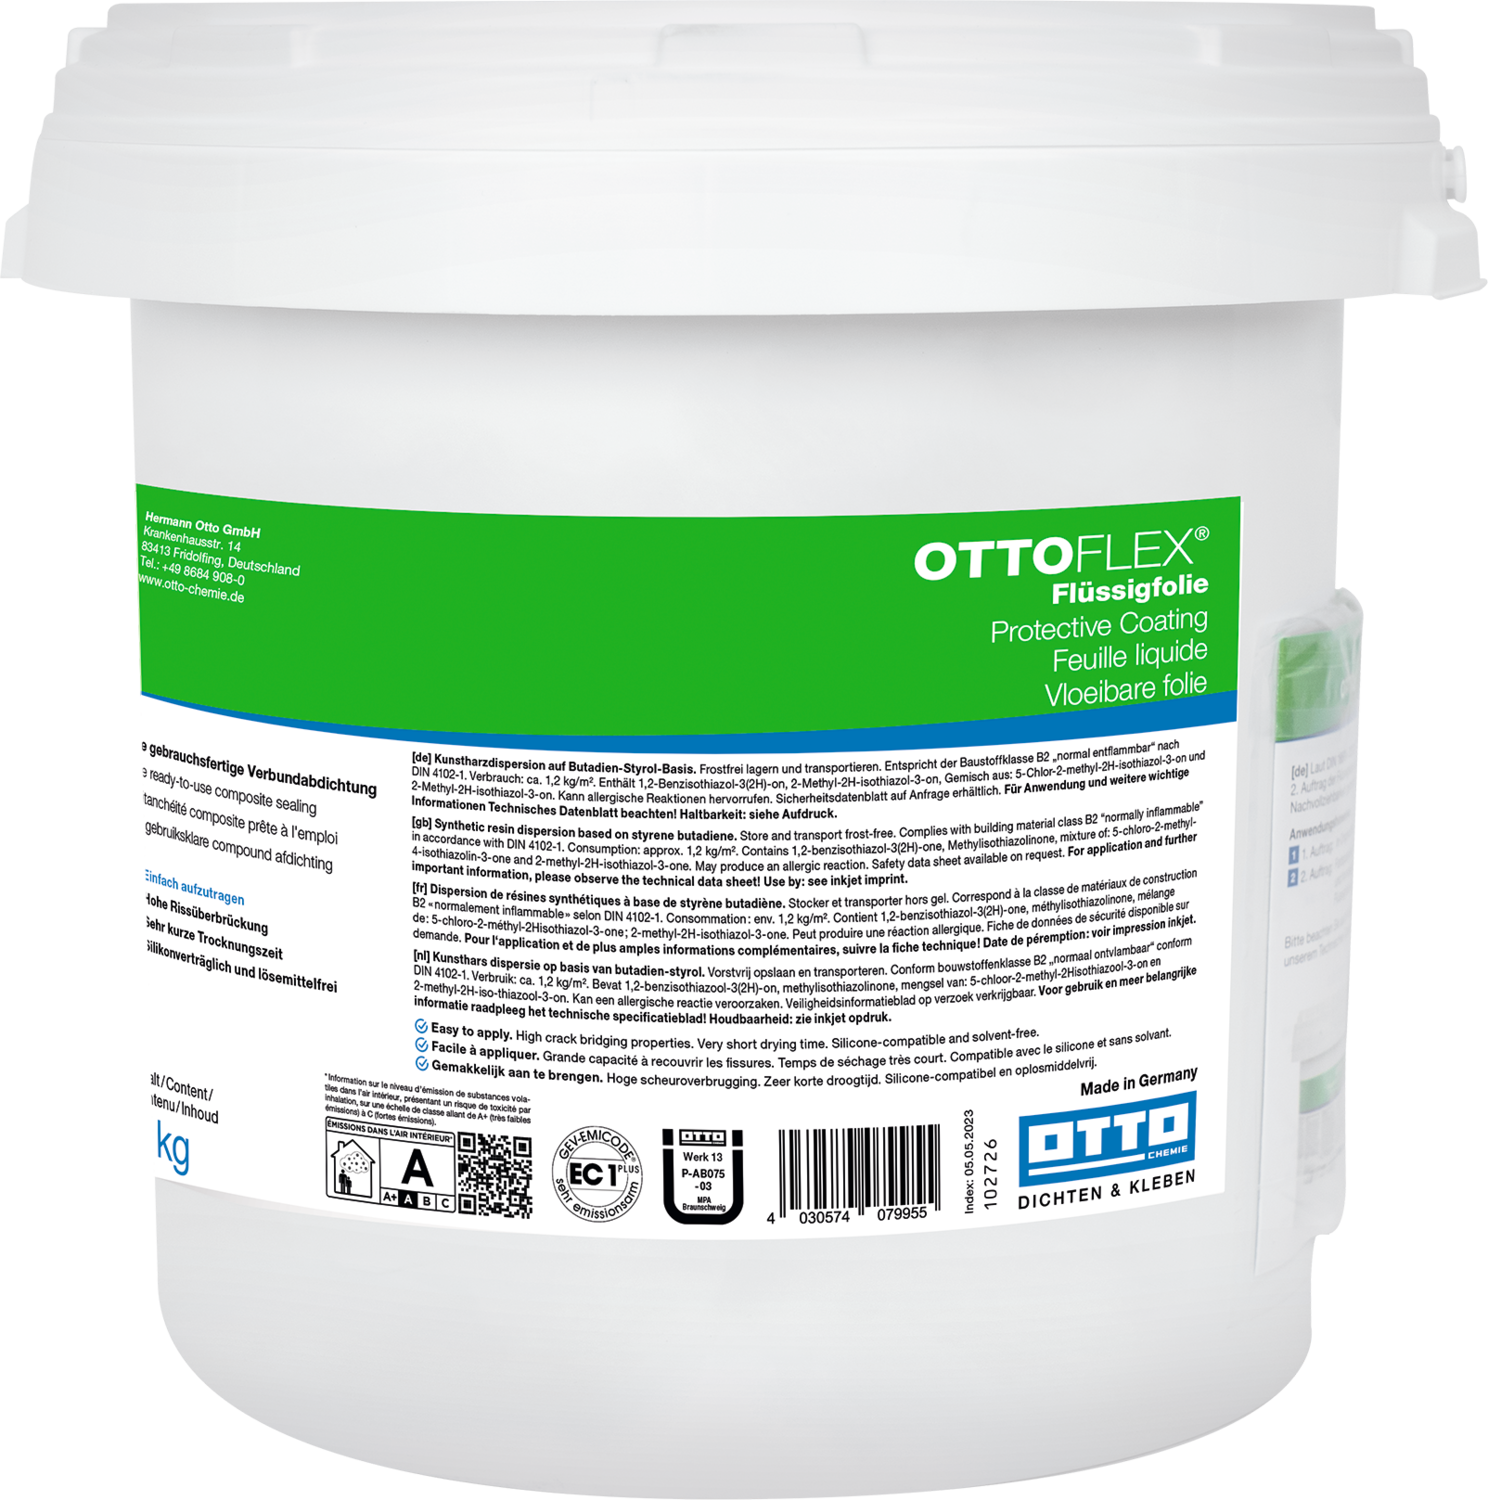 OTTOFLEX® Flüssigfolie - Die gebrauchsfertige Verbundabdichtung